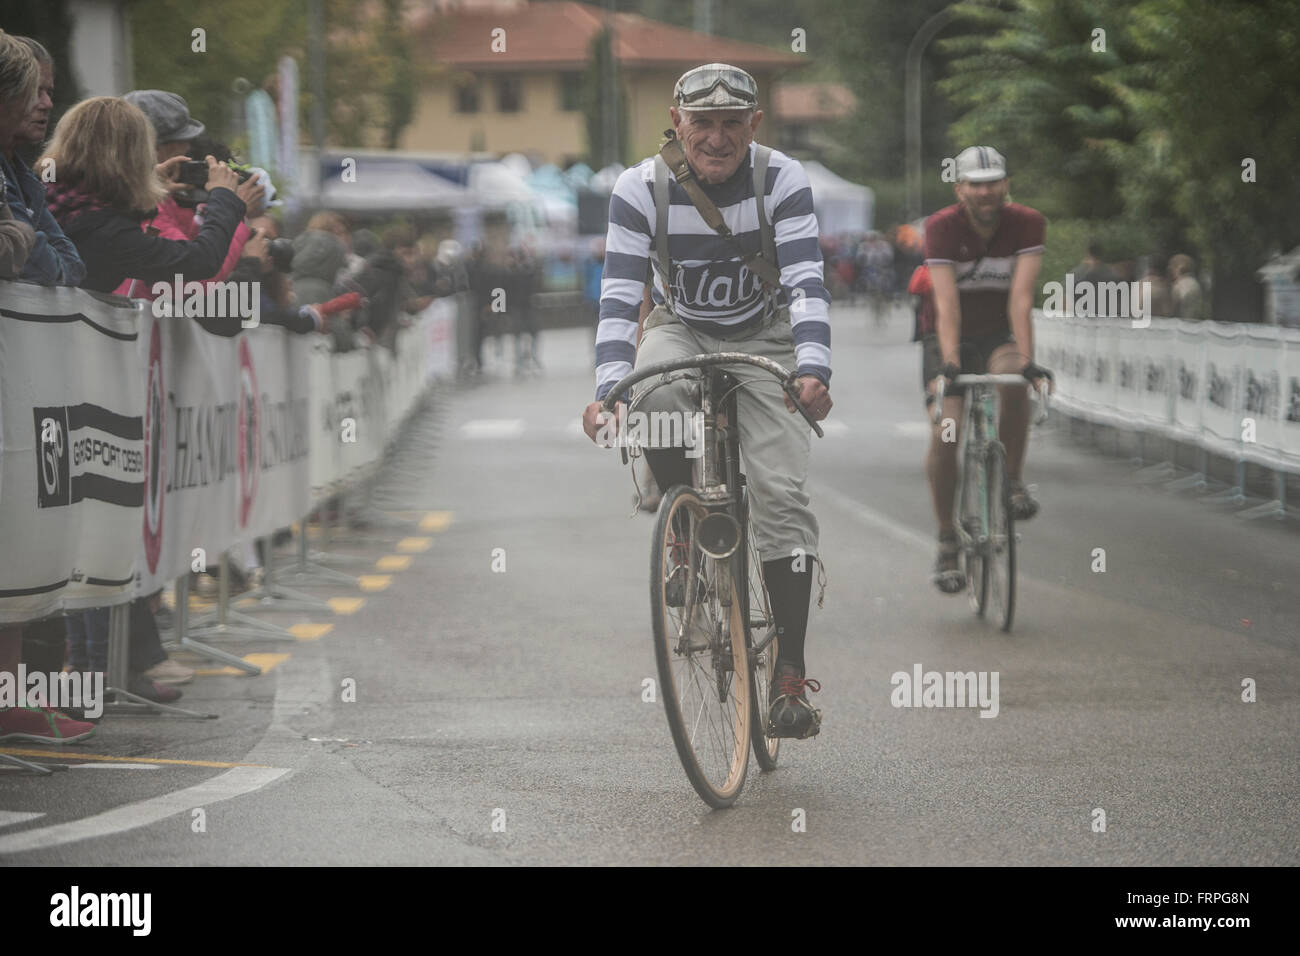 Eroica es un ciclista que tiene lugar desde 1997 en la provincia de Siena, con rutas que tienen lugar principalmente en caminos de tierra con bicicletas vintage. Foto de stock